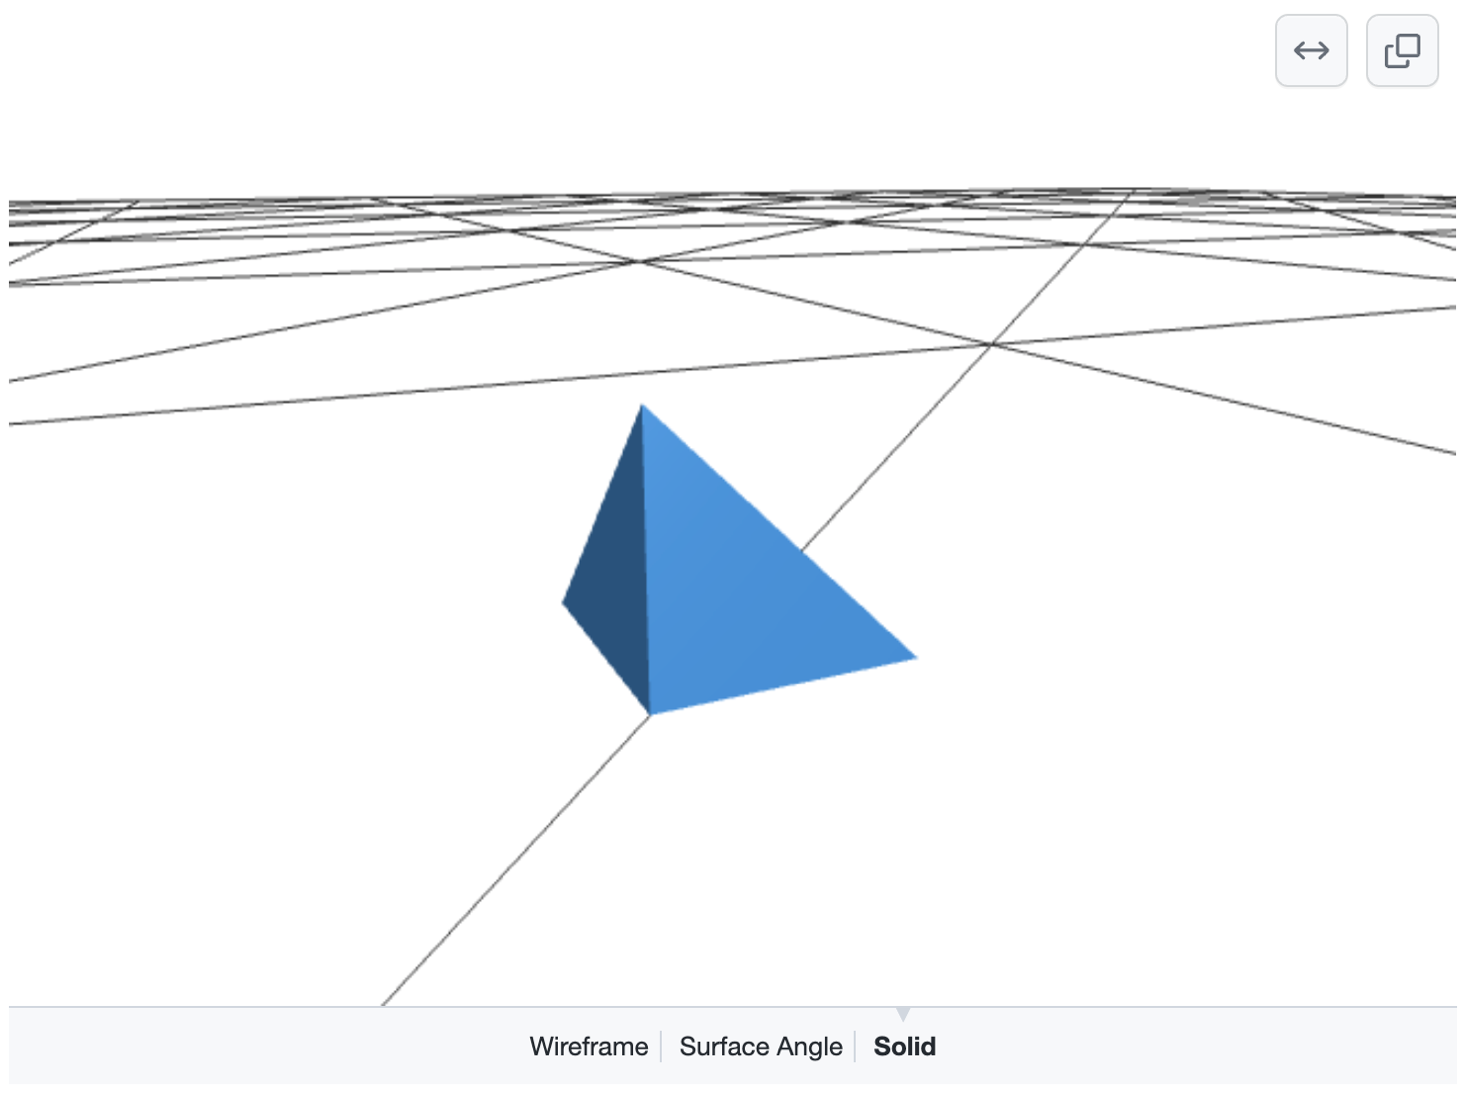 흰색 지면에 있는 검은색 선 그리드 위에 파란색 피라미드를 보여 주는 렌더링된 조작 가능한 3D 모델의 스크린샷 "와이어프레임", "표면 각도" 또는 "단색"을 선택하는 옵션이 아래쪽에 나타납니다.